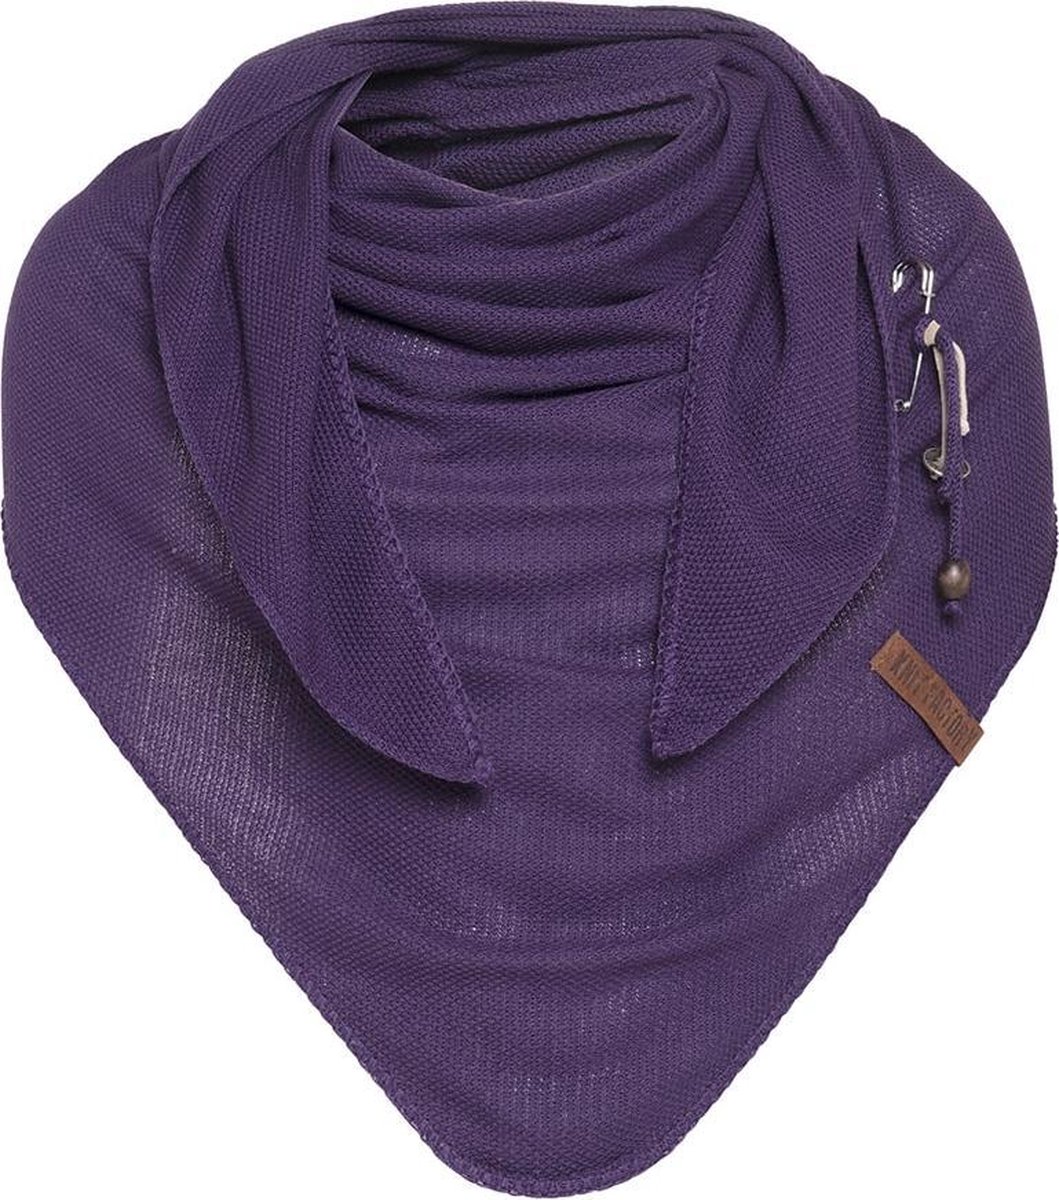 Knit Factory Lola Gebreide Omslagdoek - Driehoek Sjaal Dames - Katoenen sjaal - Luchtige Sjaal voor de lente, zomer en herfst - Stola - Purple - 190x85 cm - Inclusief sierspeld